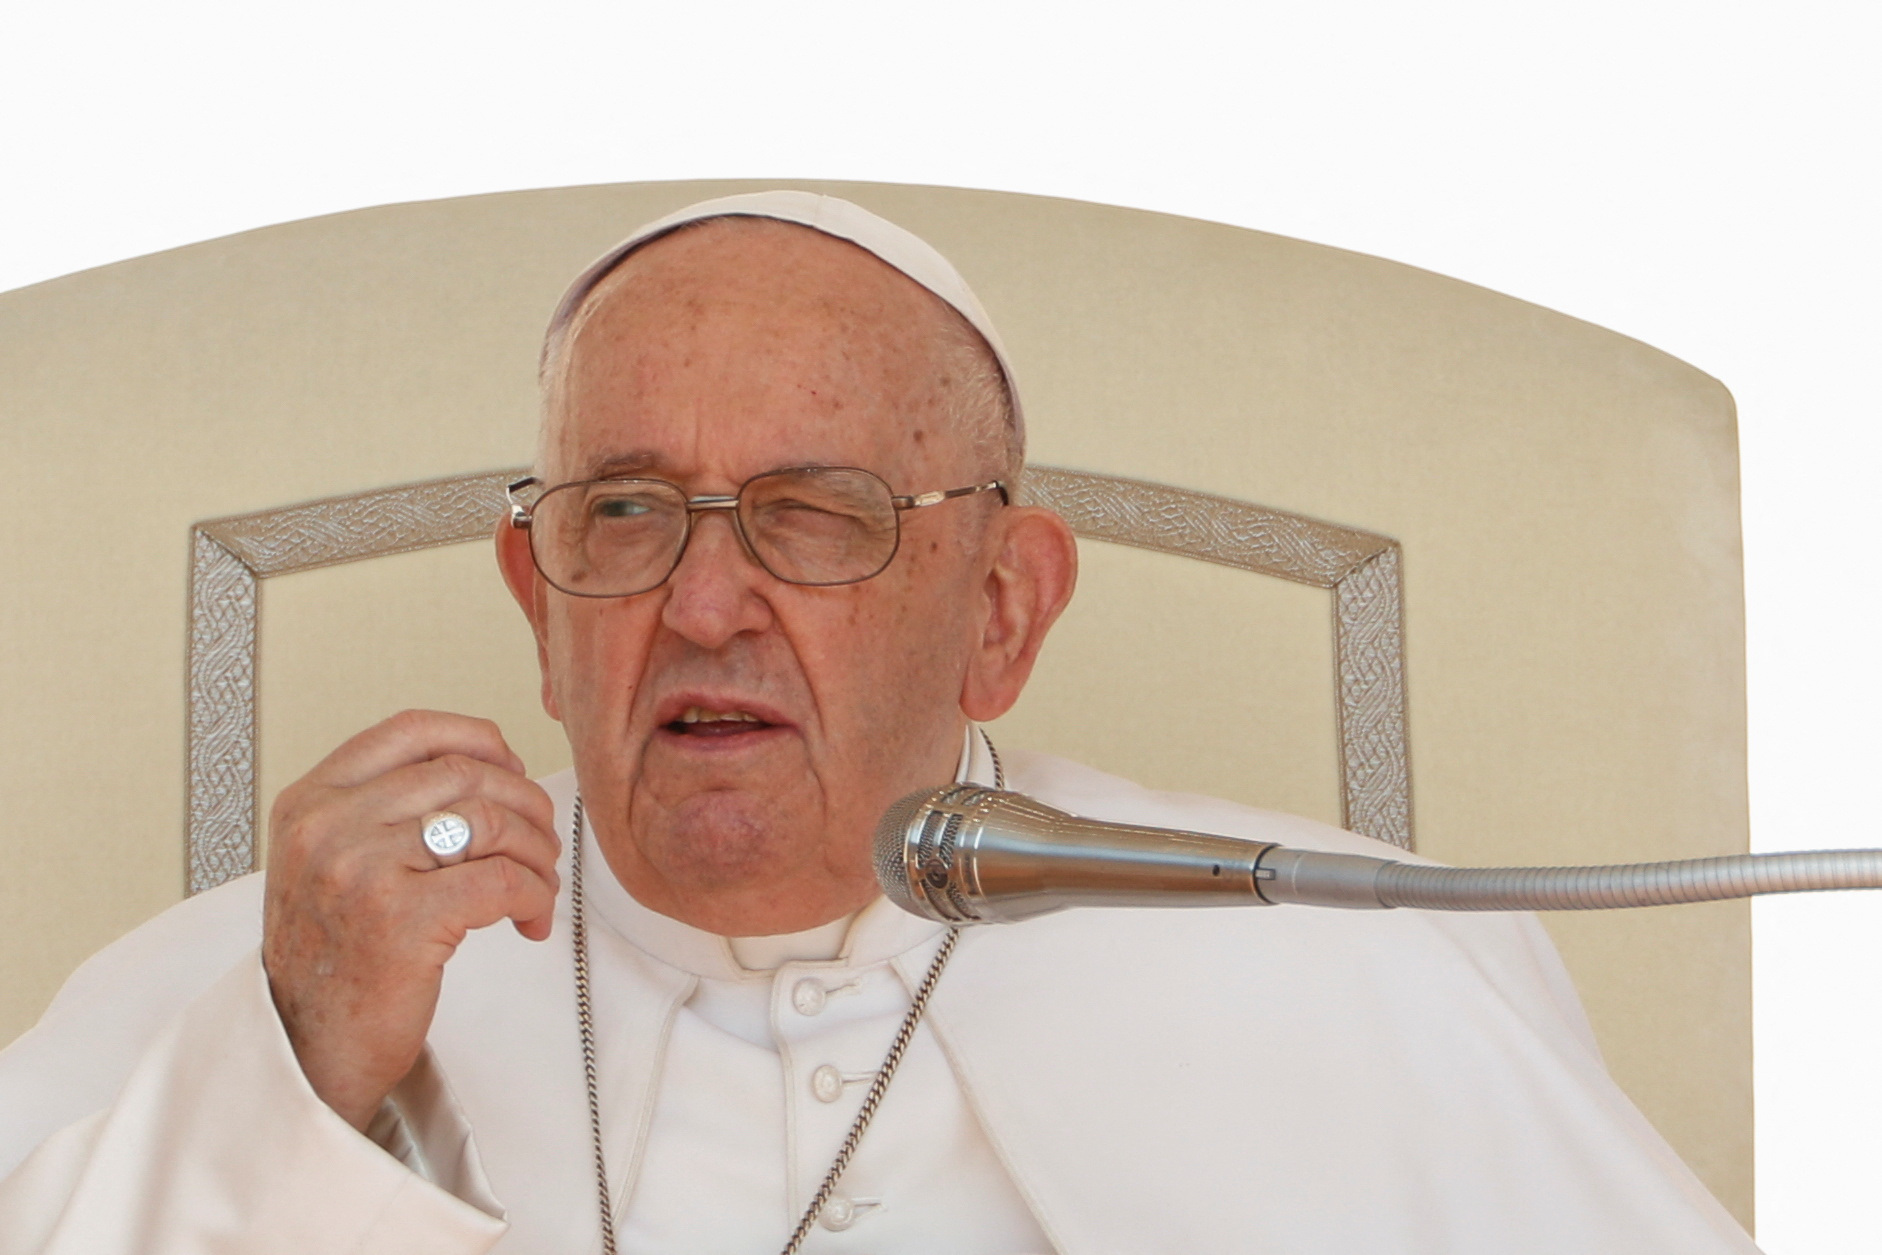 El papa Francisco suspendió su agenda de audiencias porque padece un “estado febril”